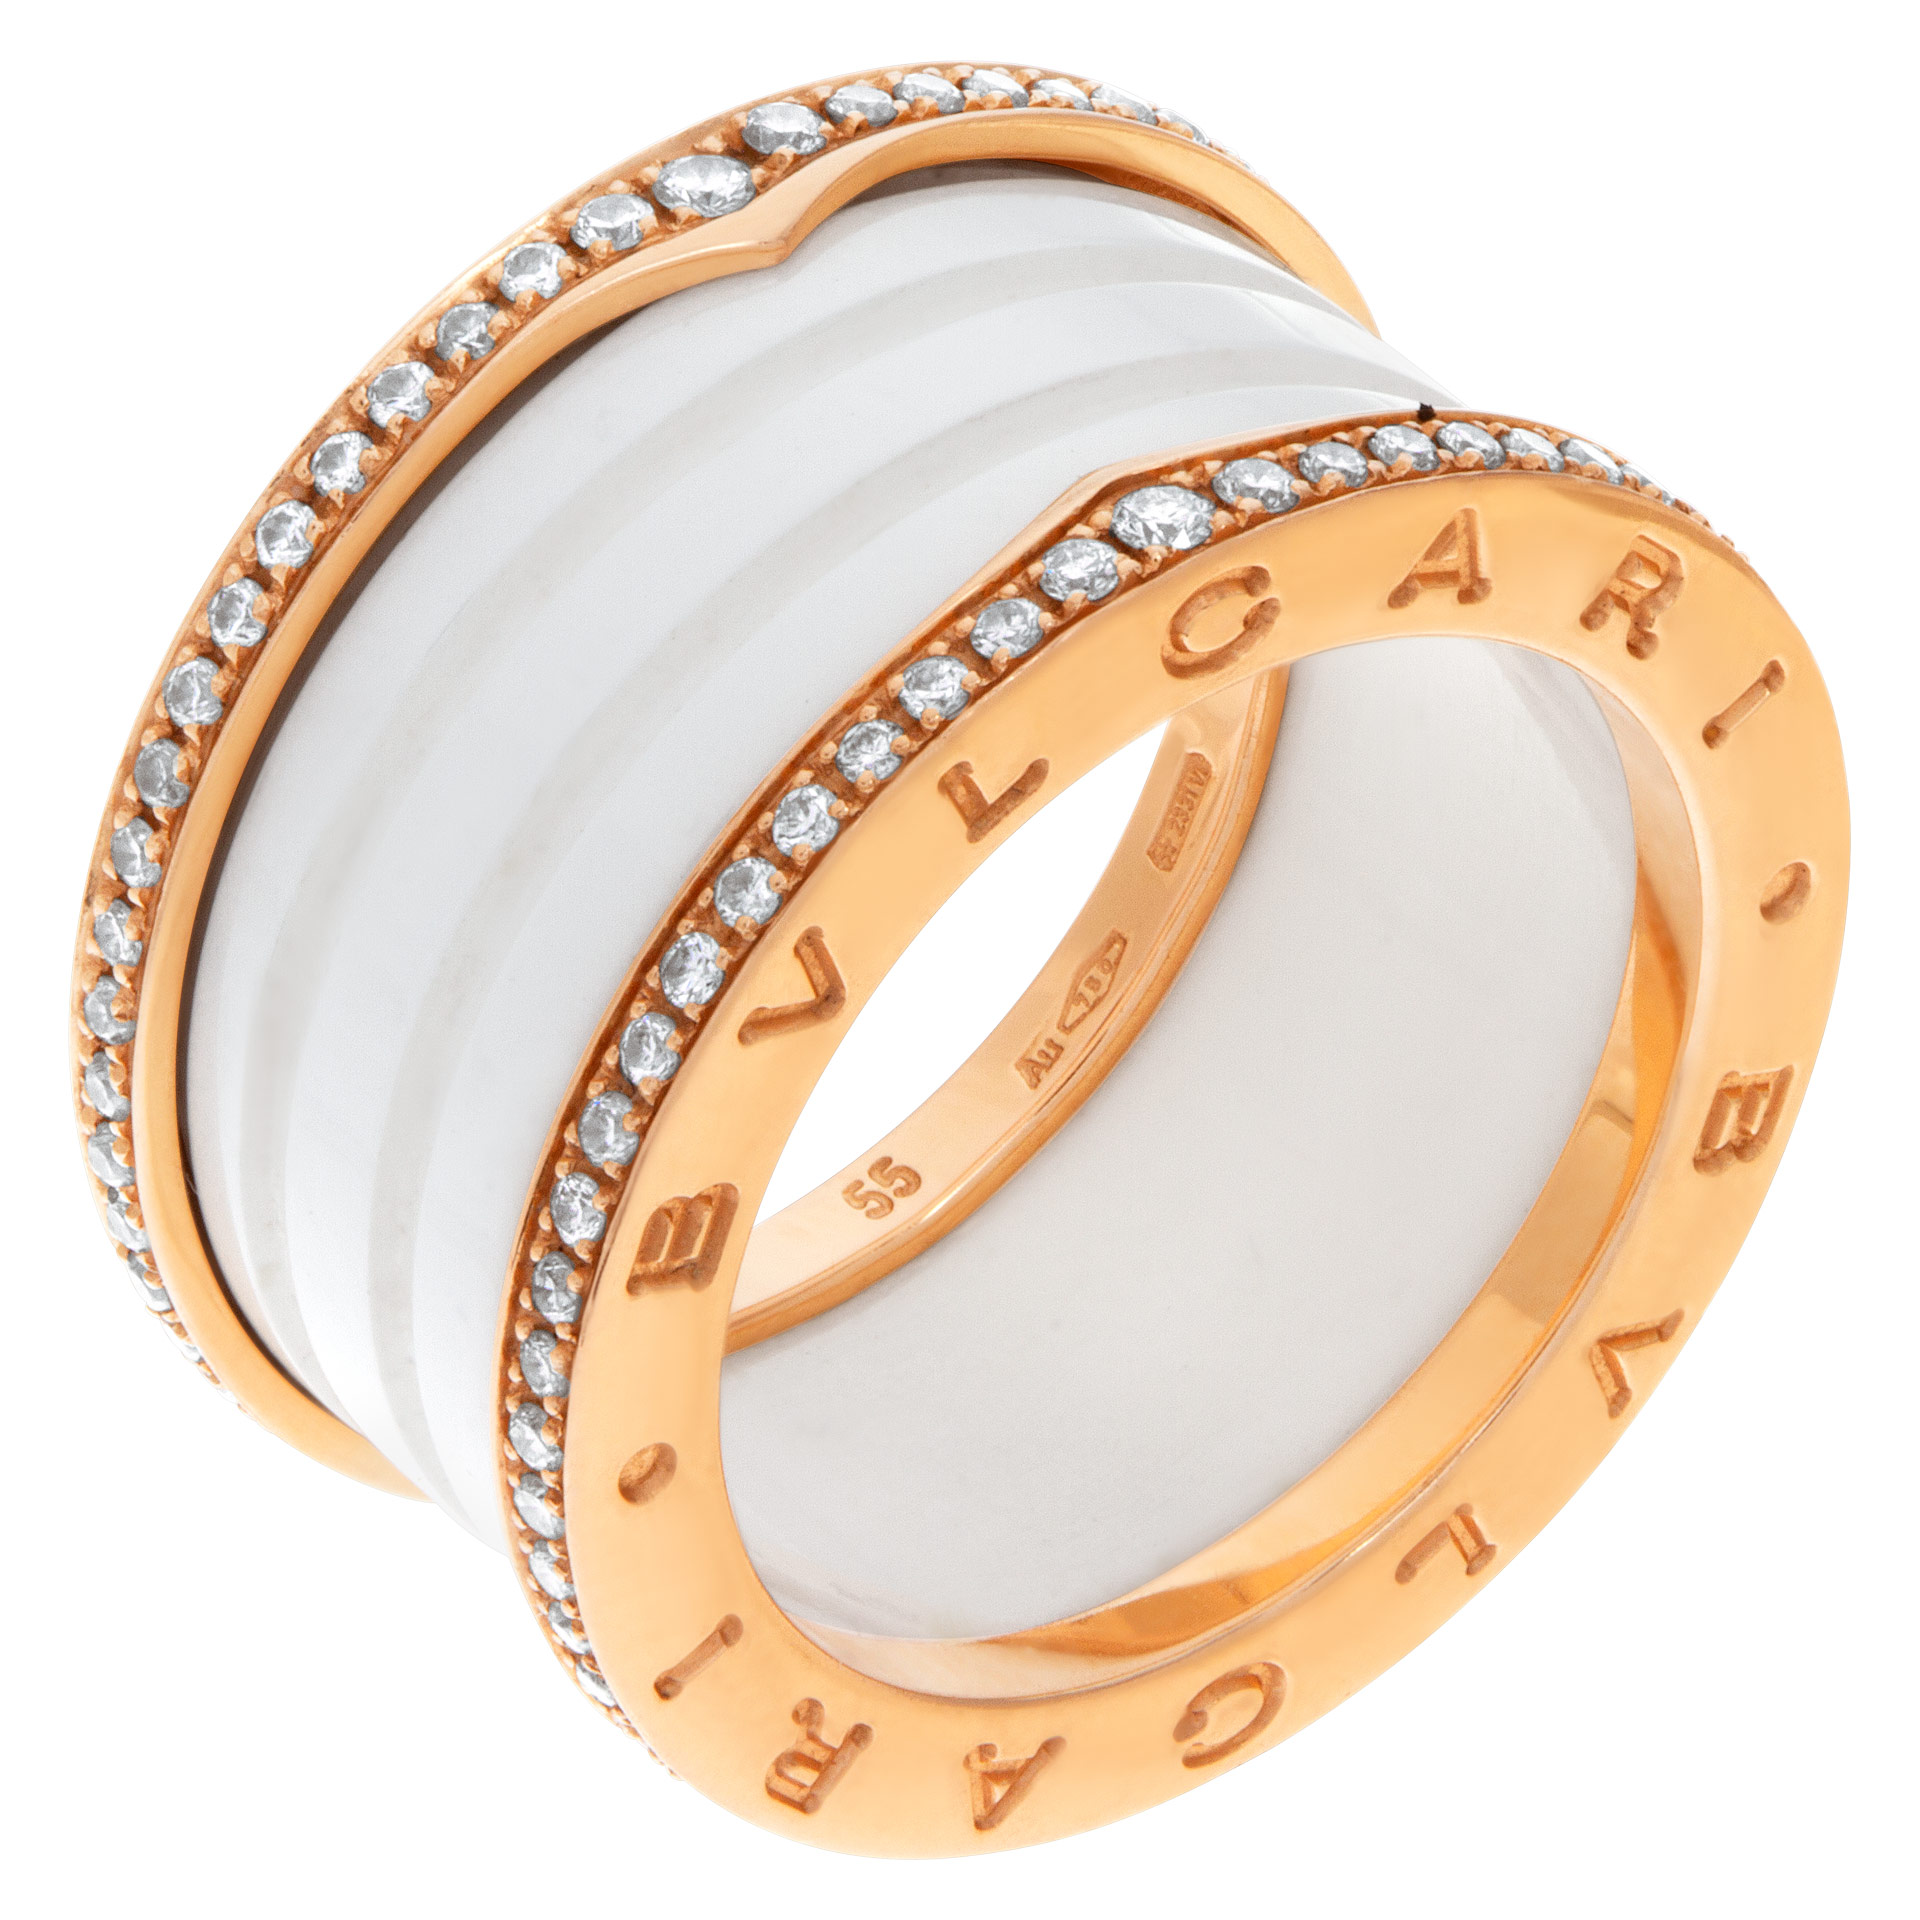 Bvlgari B.zero1 ring in 18k rose gold with diamonds & white ceramic- Ref:  349963